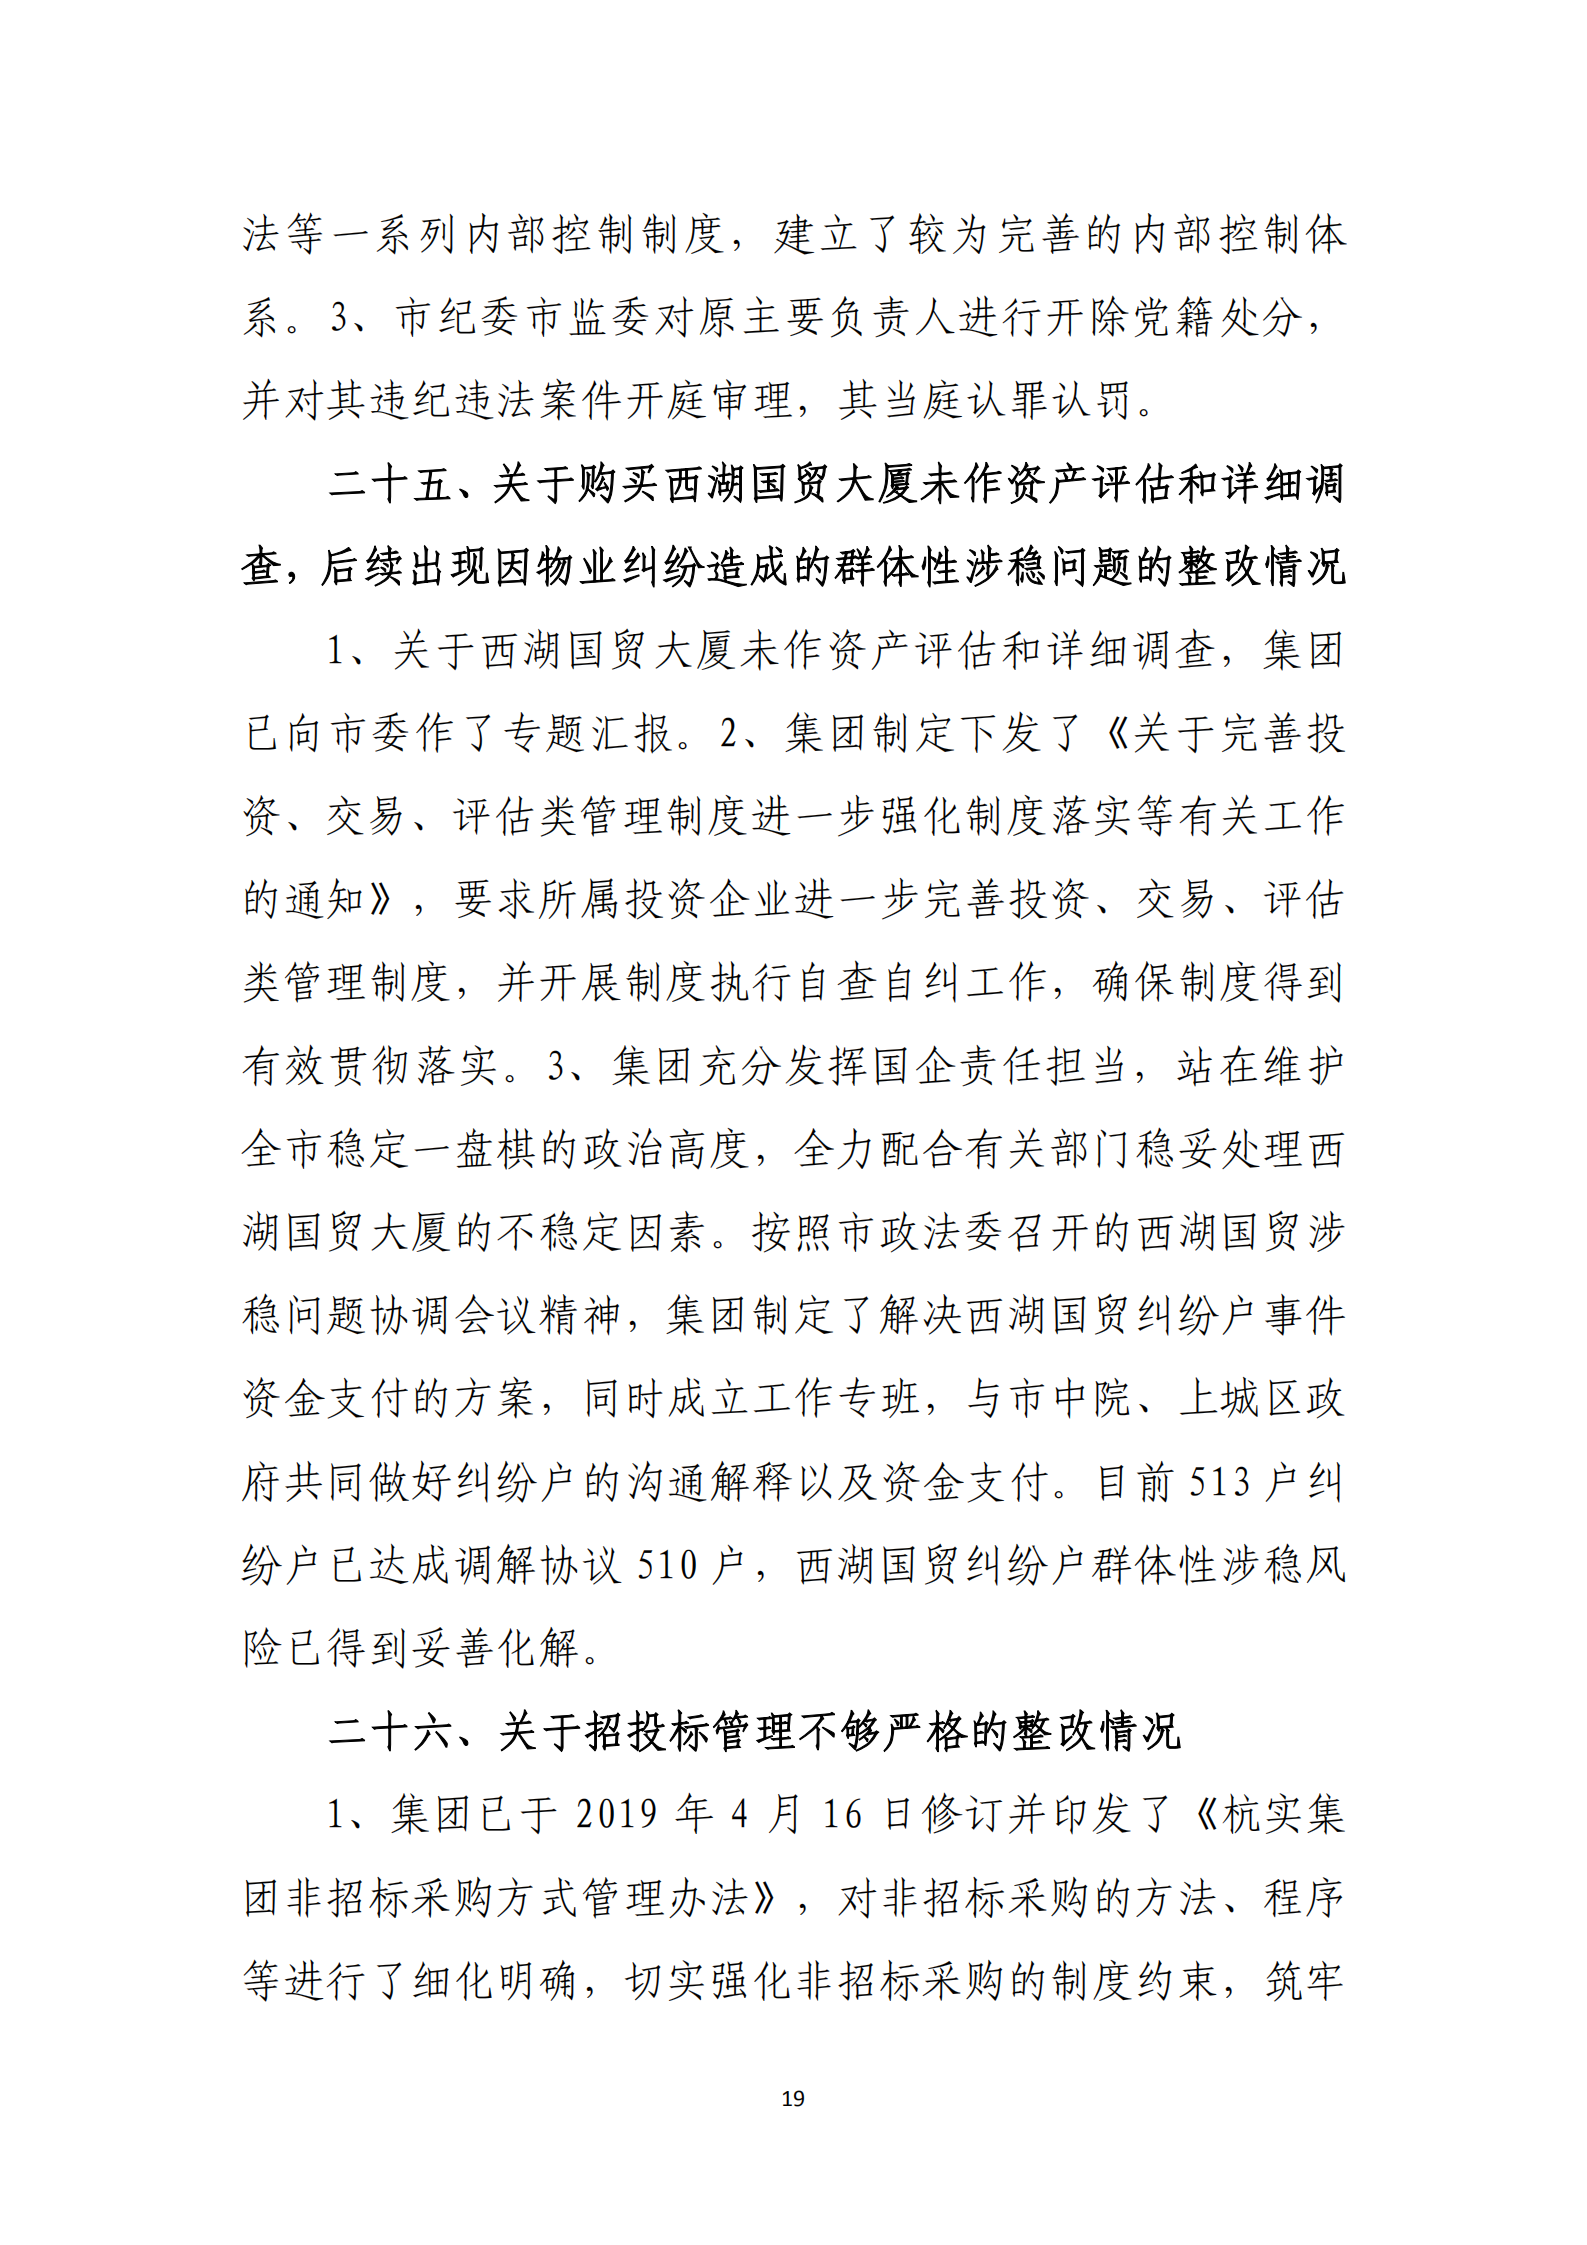 杭实集团党委关于巡察整改情况的通报_18.png